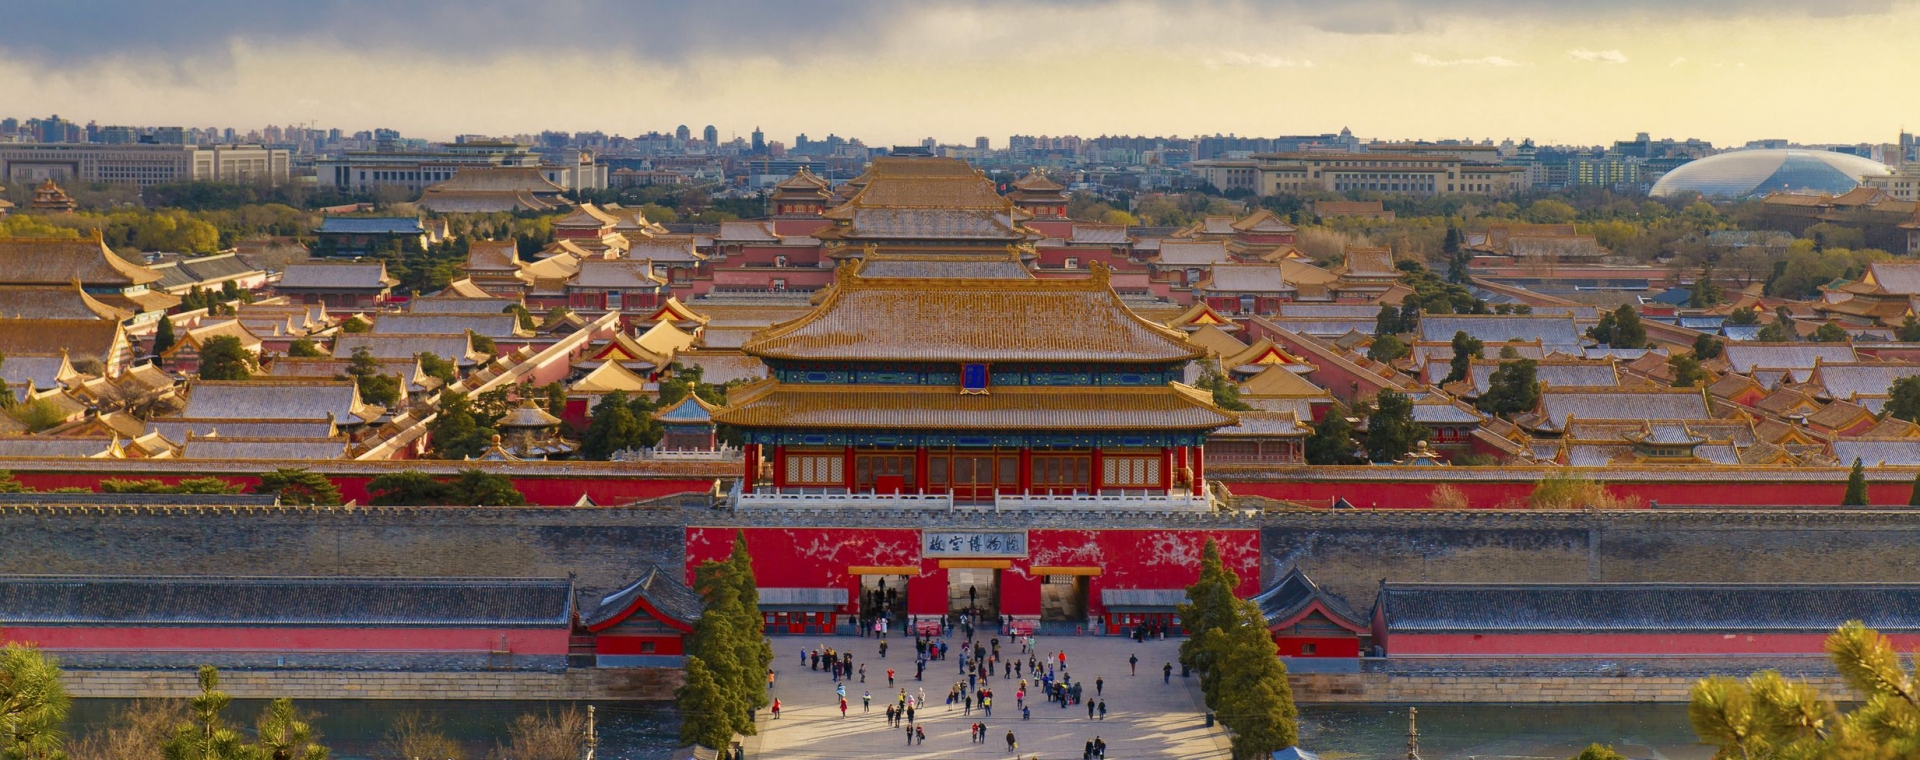 Oraşul Interzis sau Palatul Imperial din China: Un mister descifrat după 600 de ani